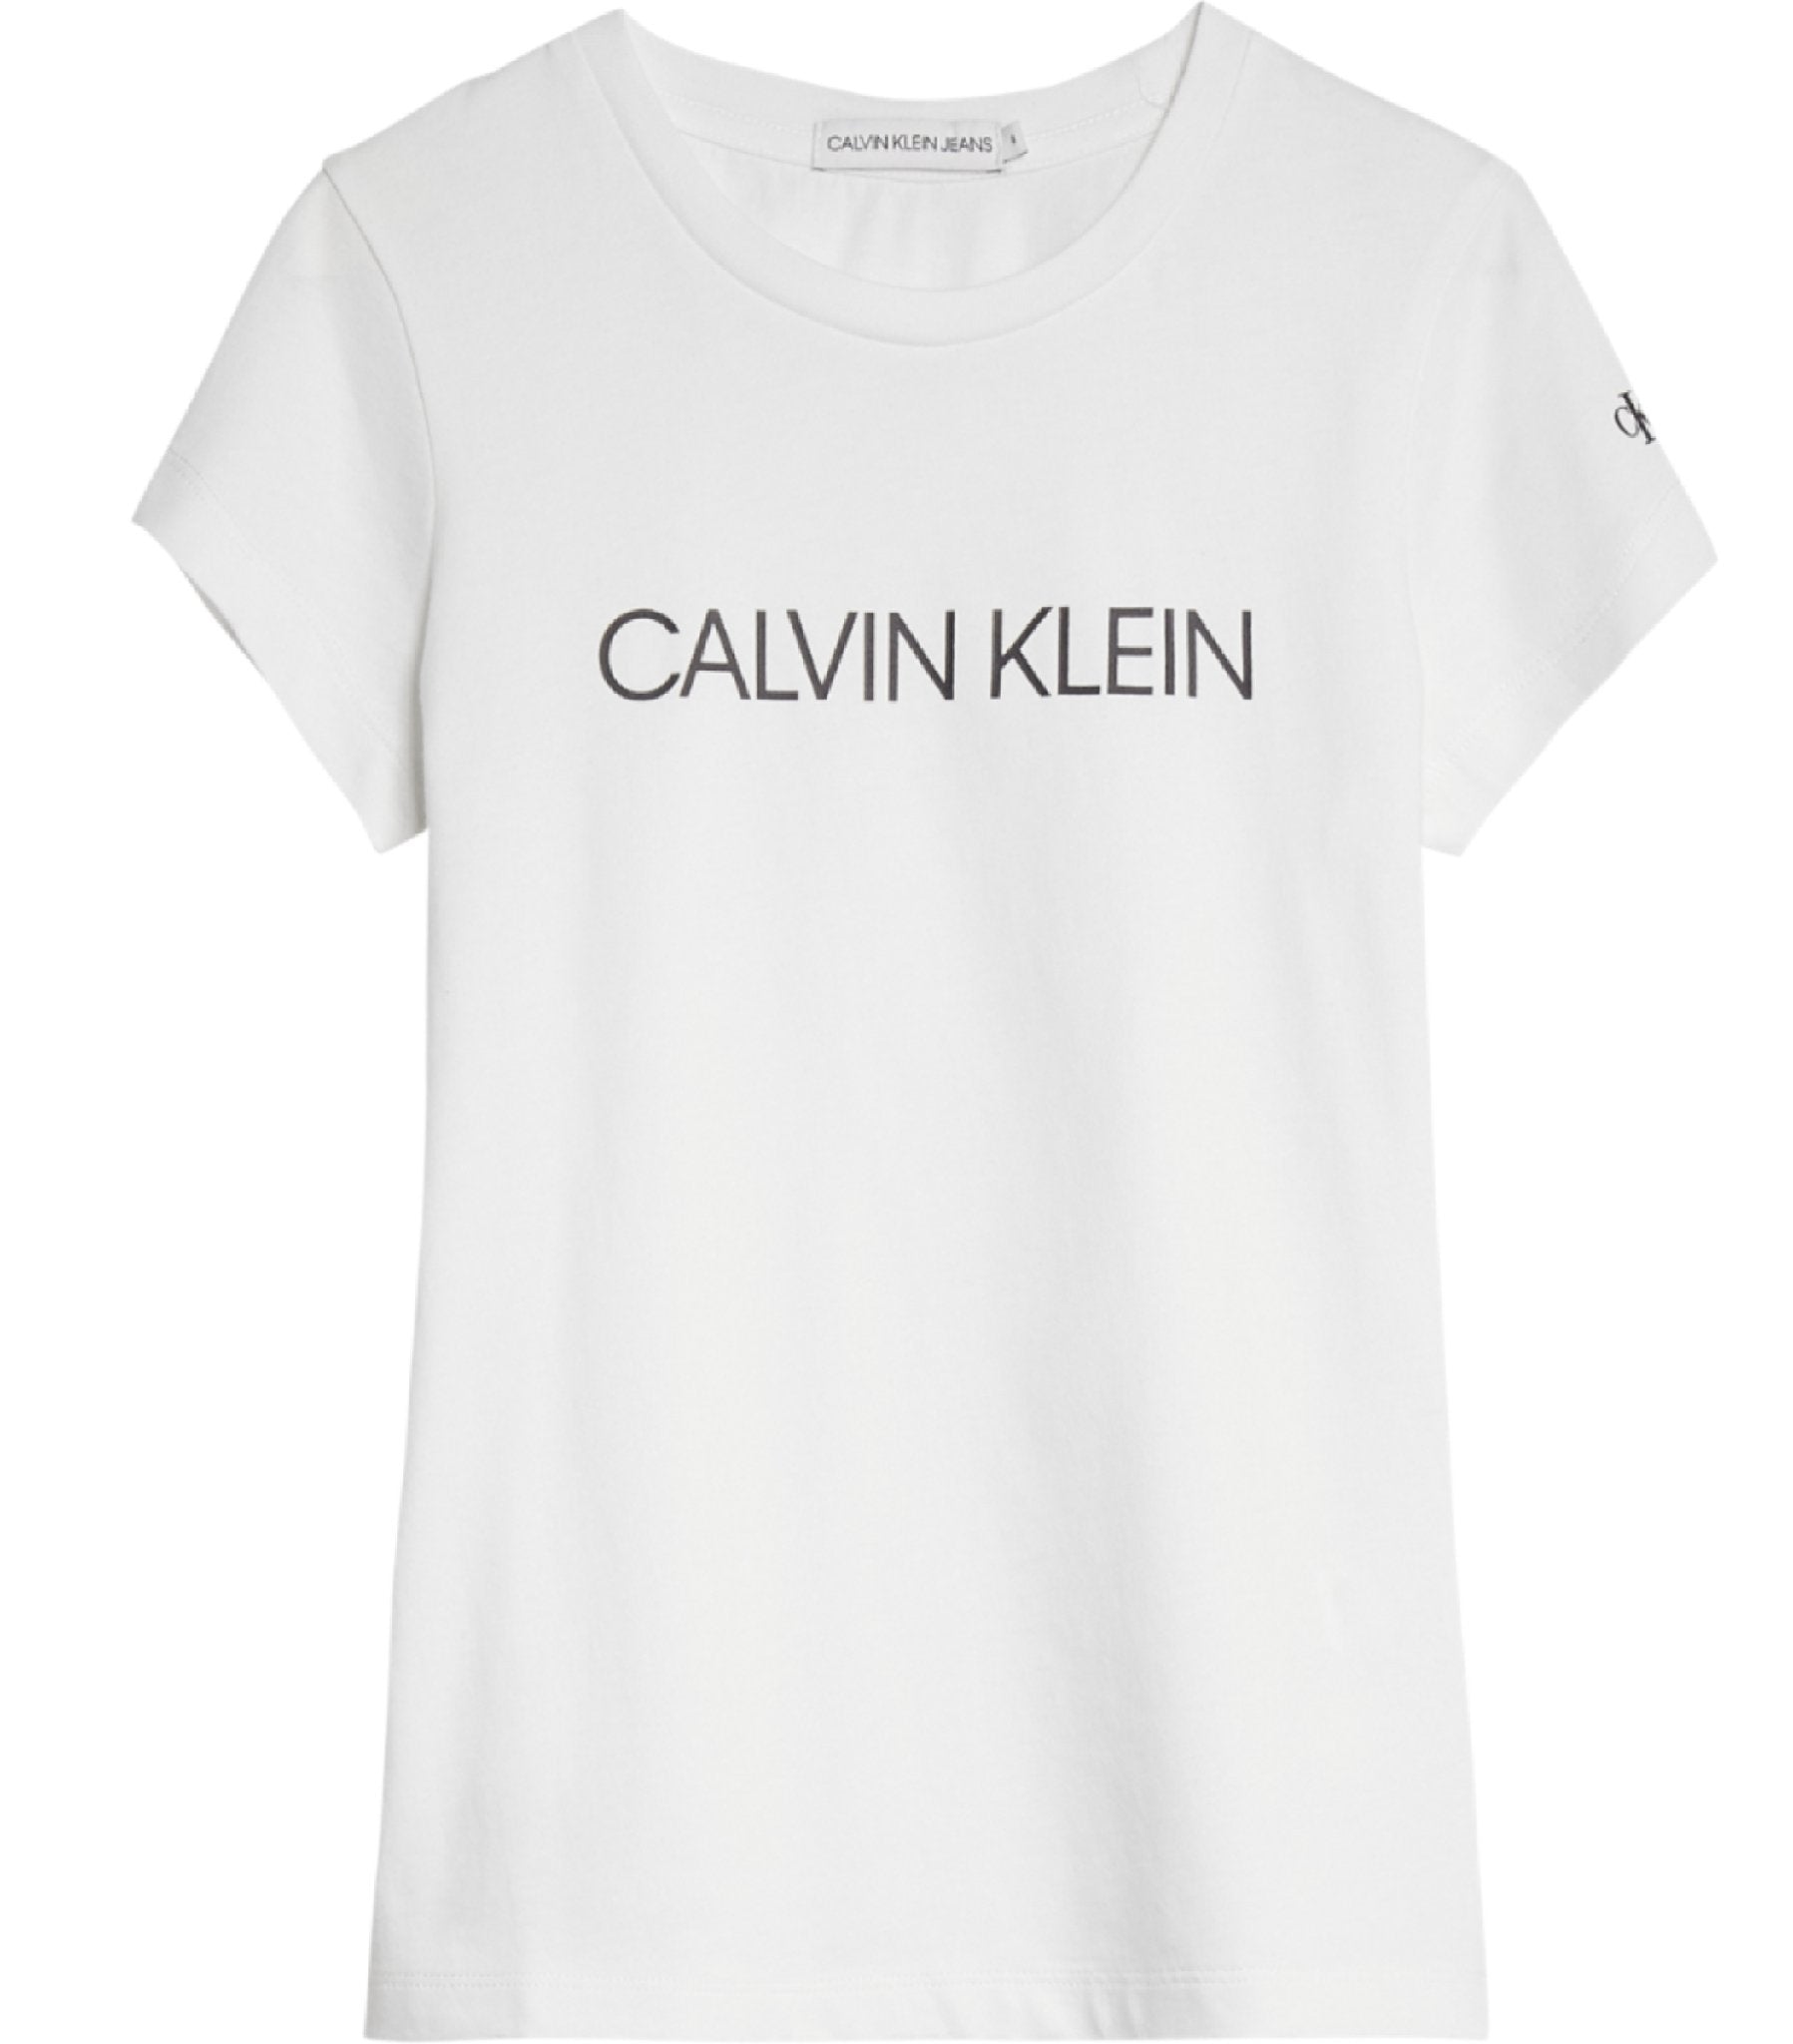 Meisjes Institutional Slim T-Shirt van Calvin Klein in de kleur Geel in maat 176.